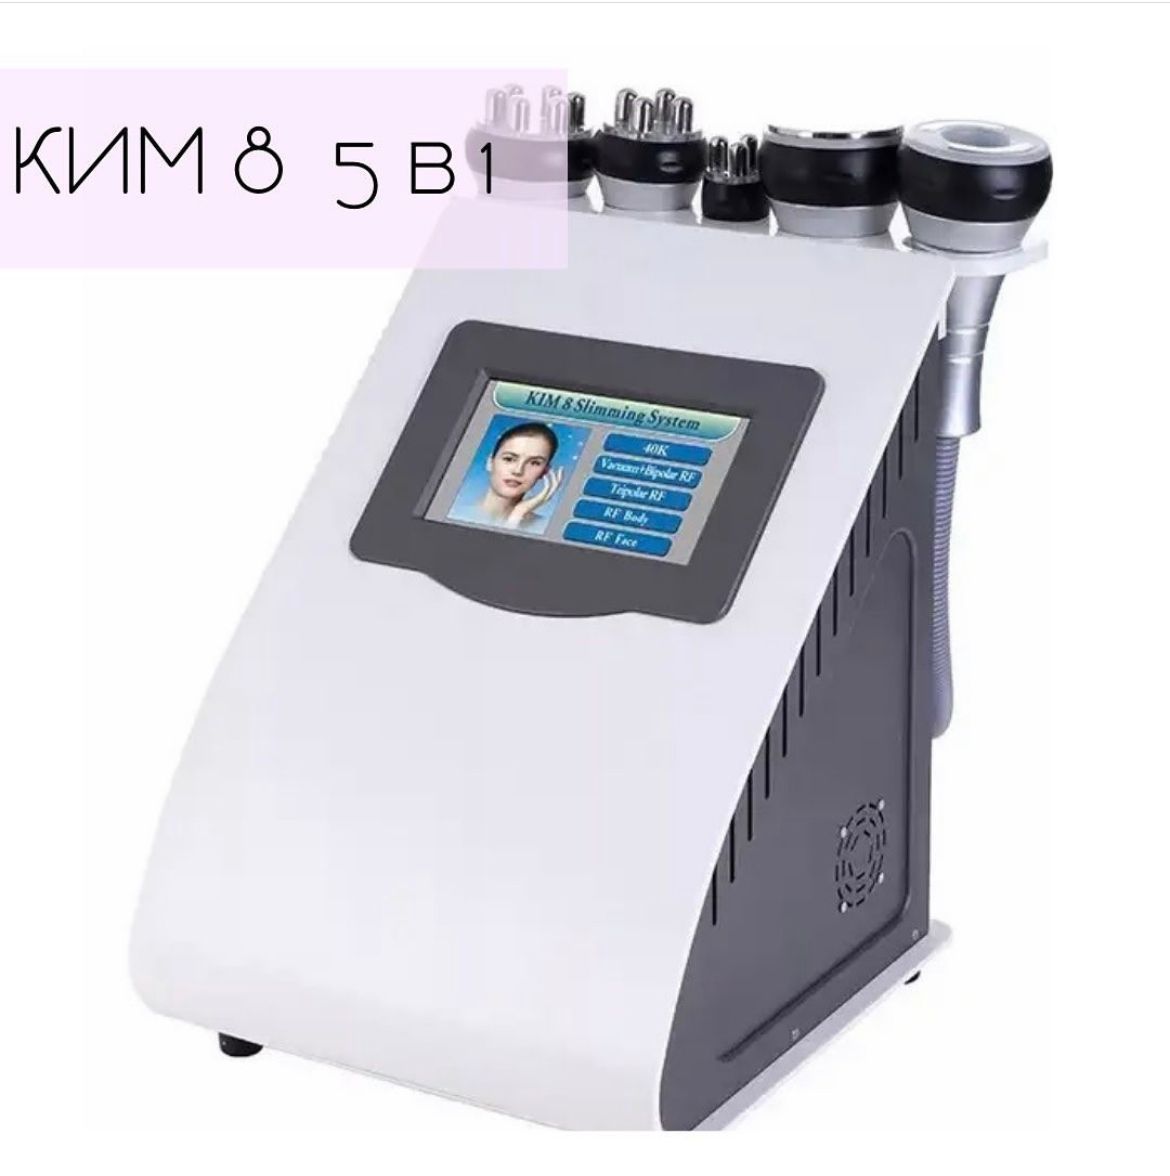 Купить аппарат для лифтинга лица профессиональный. Аппарат 5 в 1 Kim 8 (sa-6048): кавитация, RF. Kim 8 аппарат. Аппарат Kim 8 Slimming System.